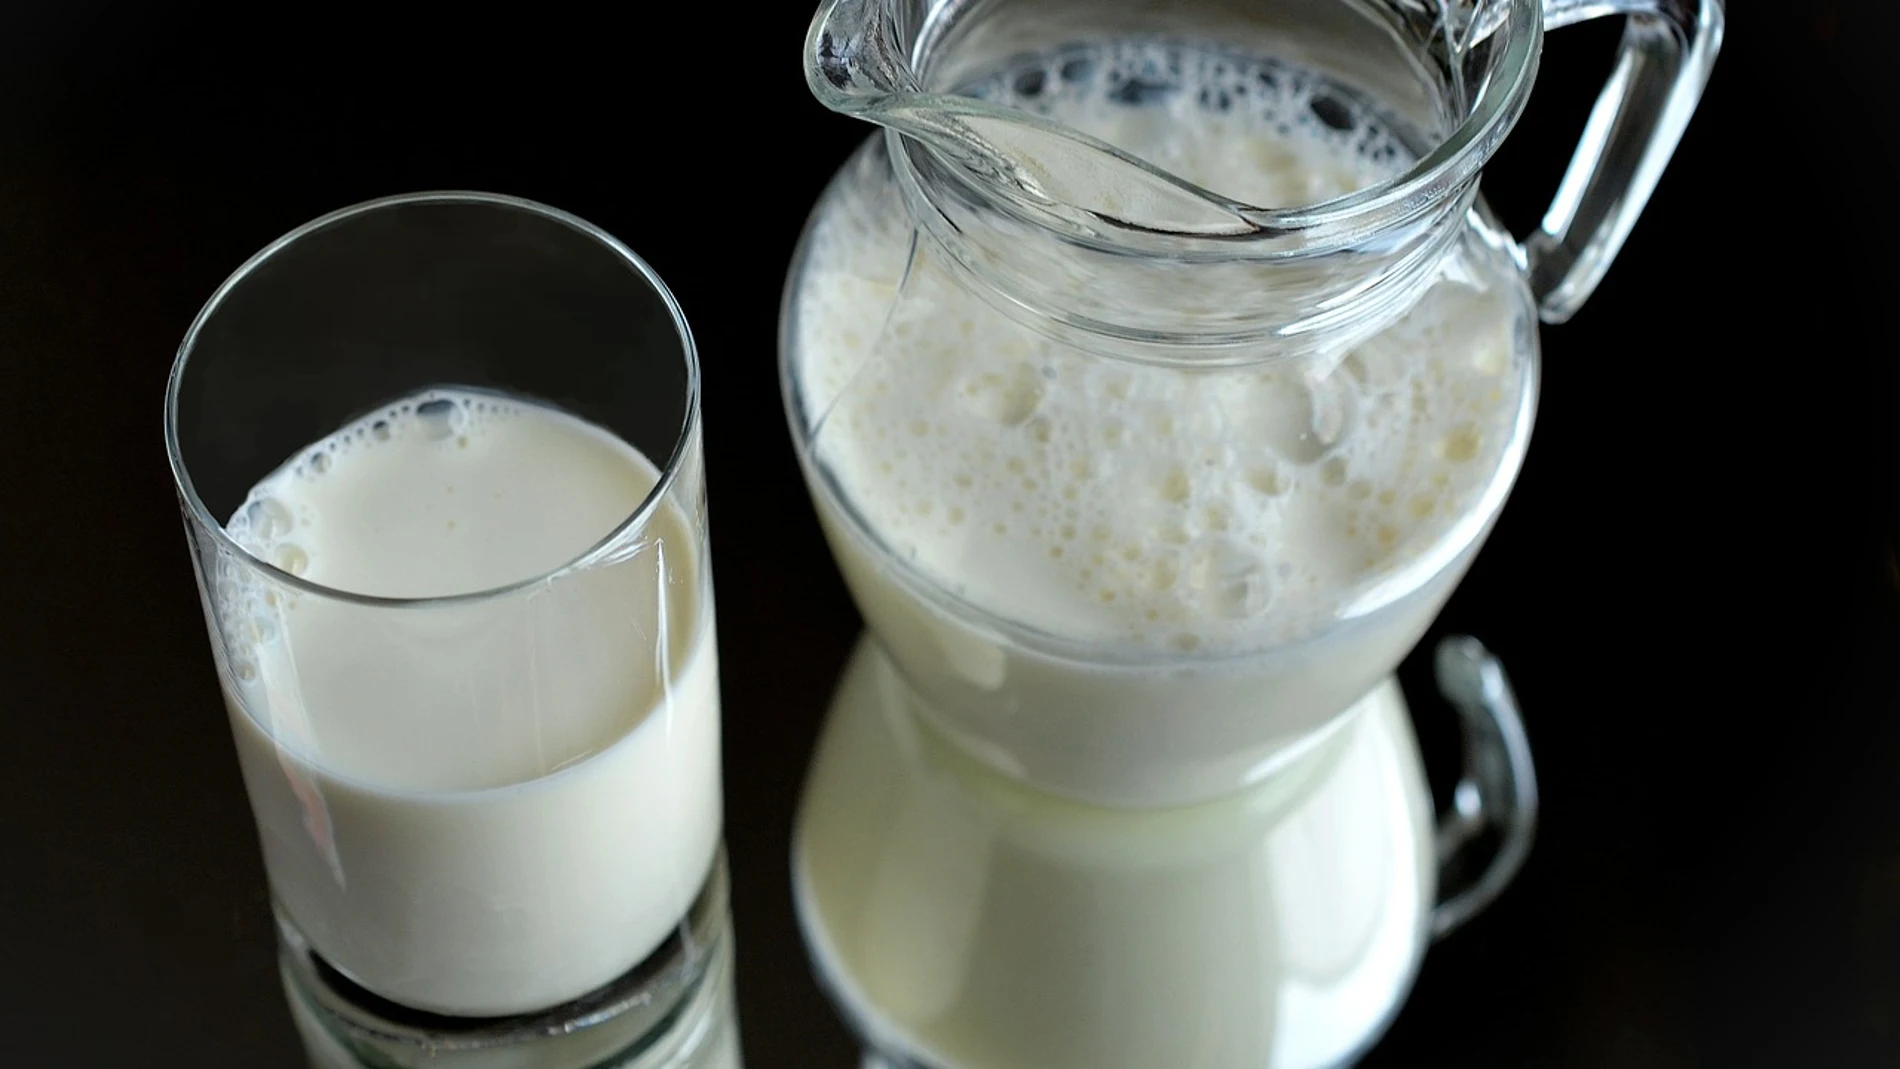 Un vaso y una jarra de leche